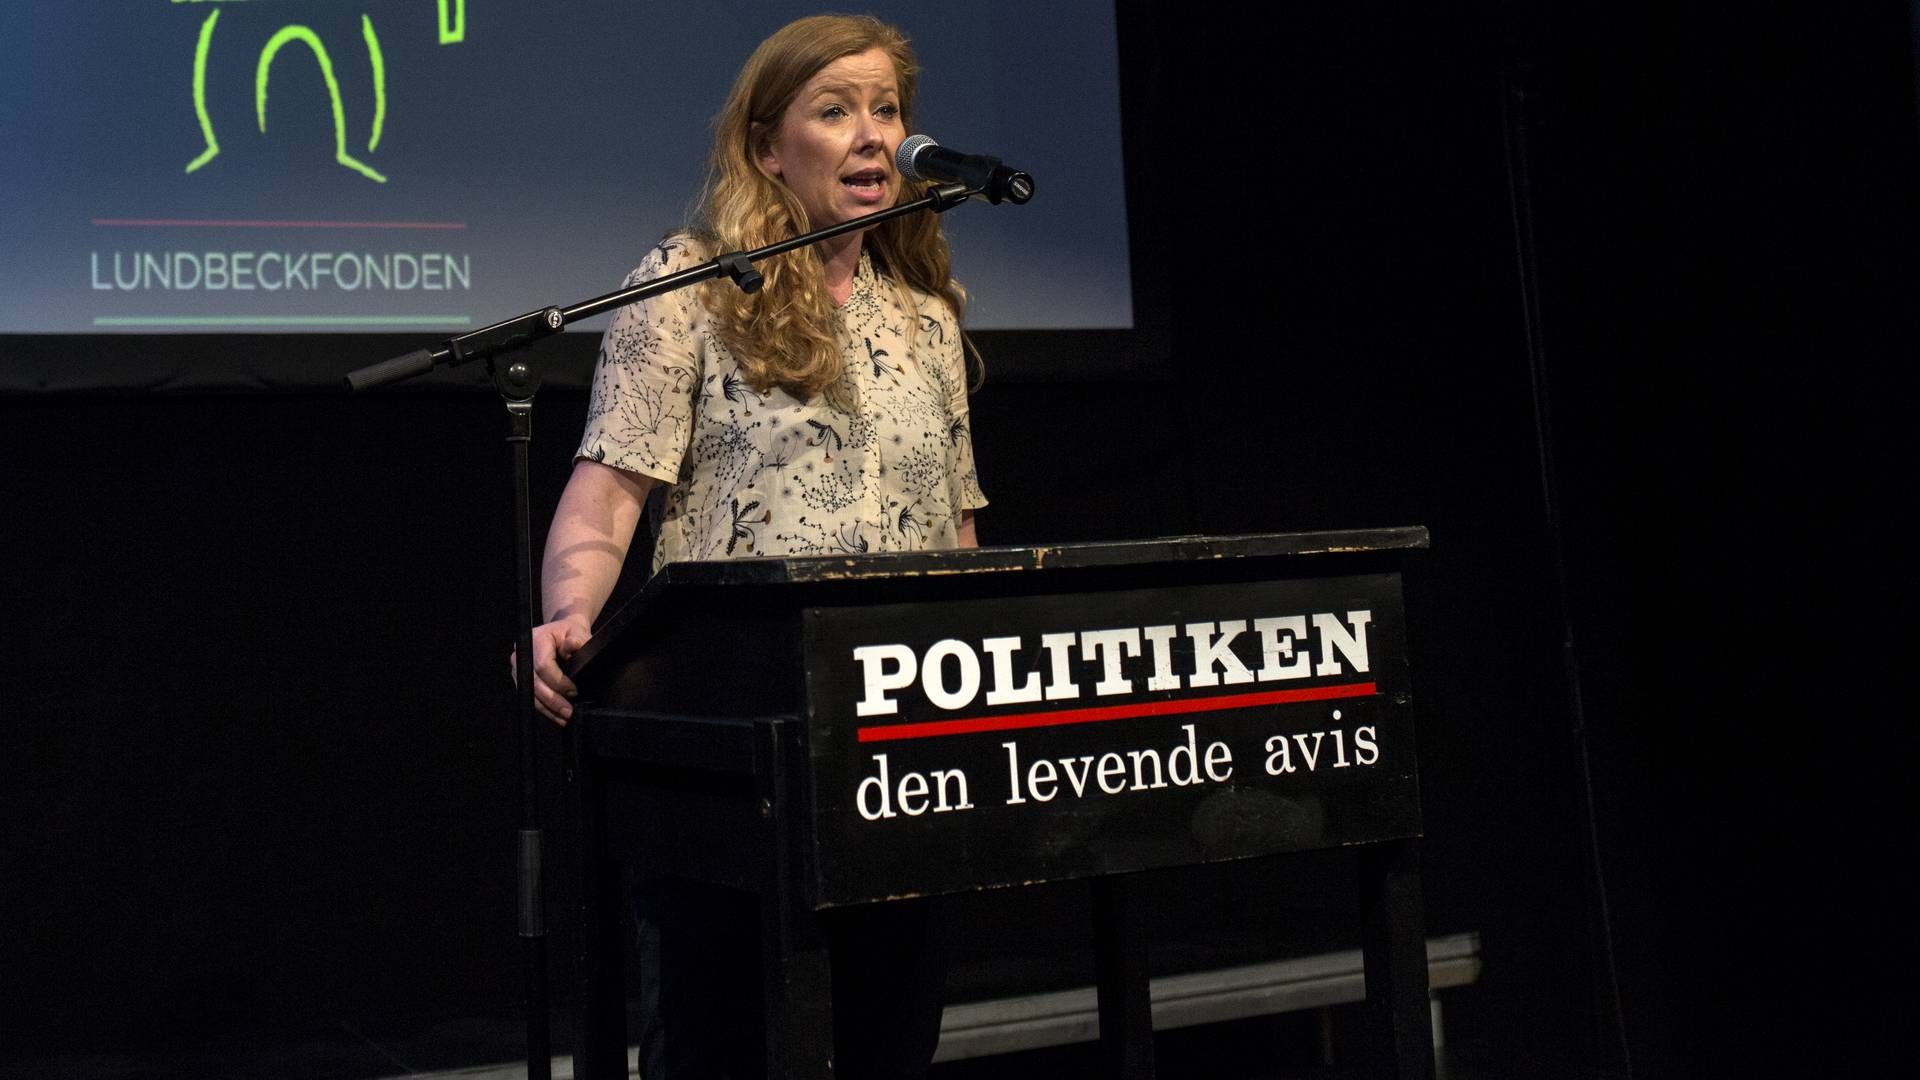 Anne Mette Svane forlader Politiken for at blive chefredaktør for TV 2 News. | Foto: Ivan Boll